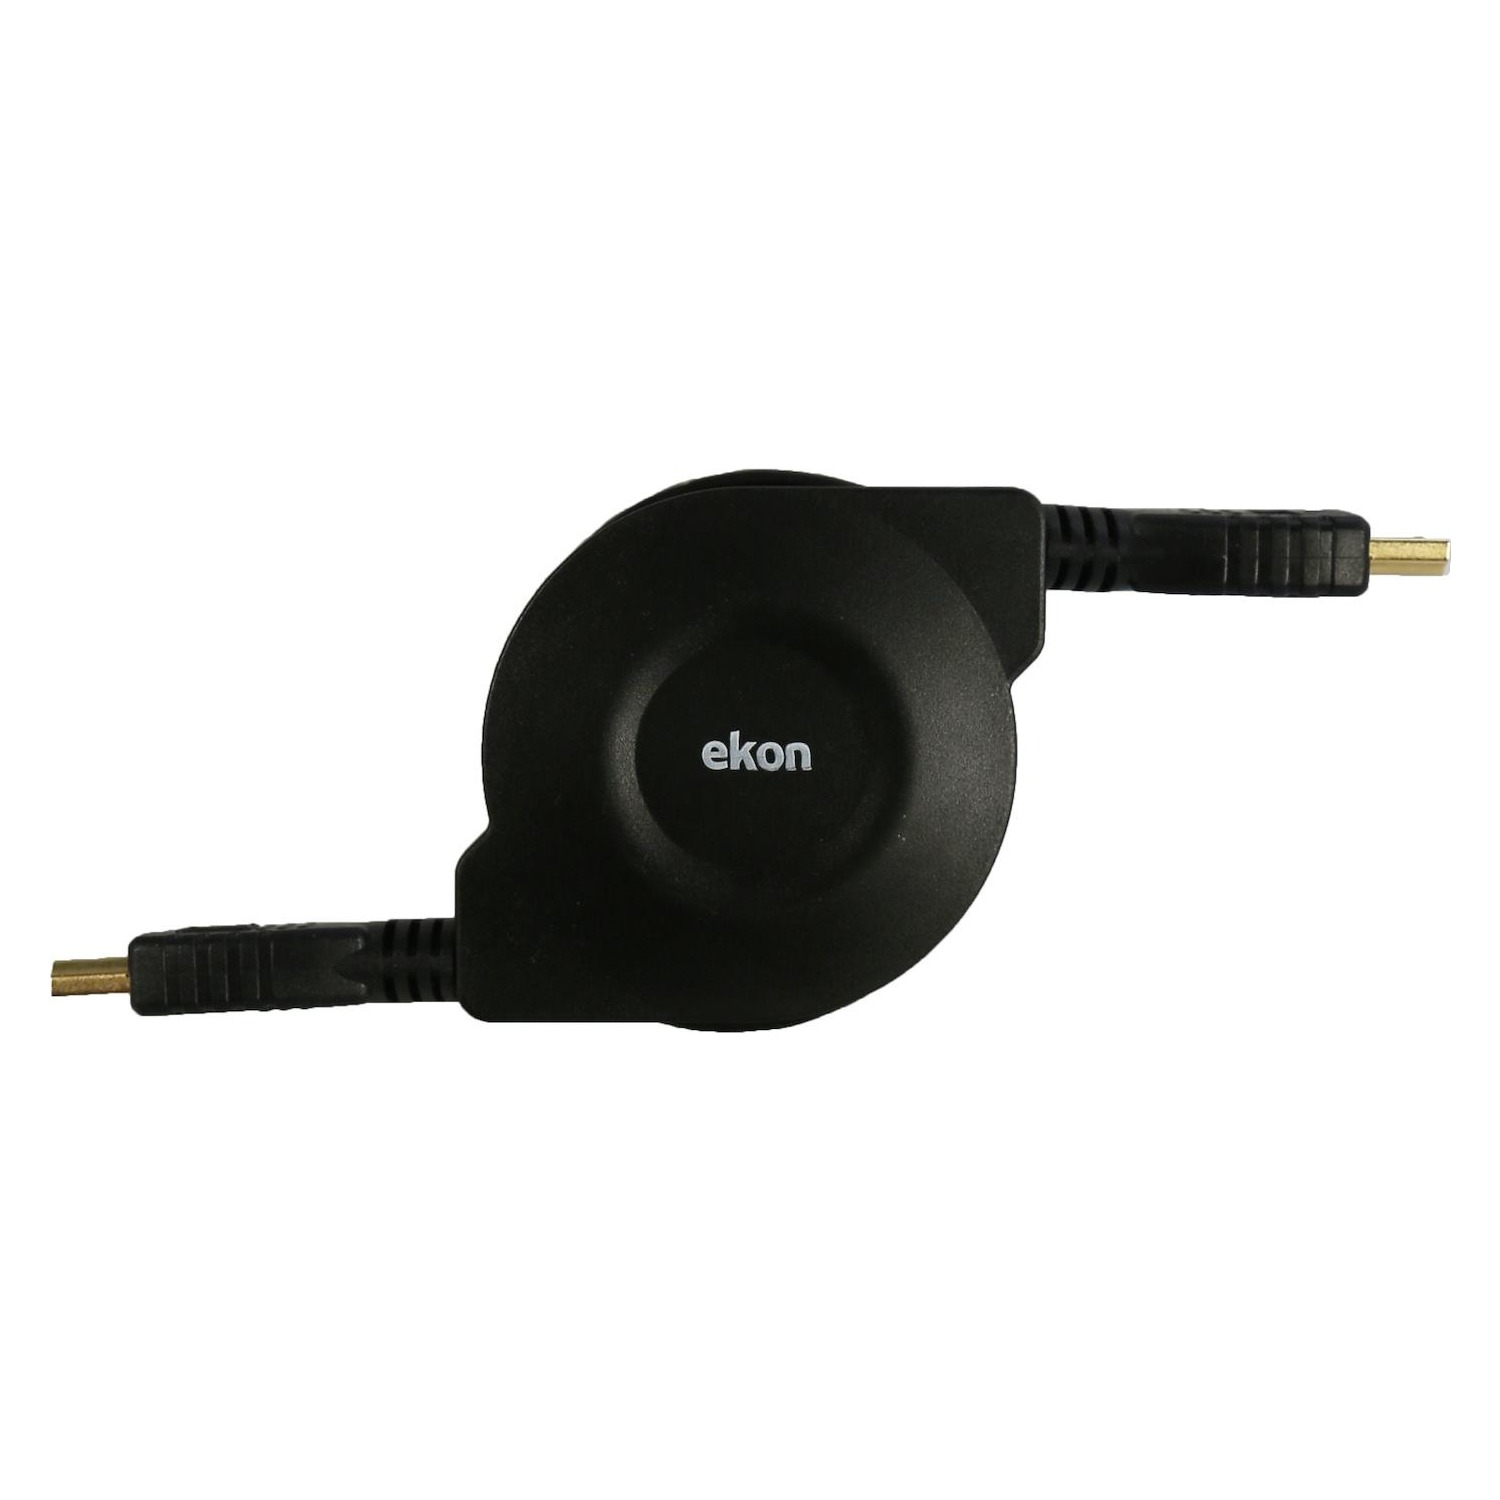 Immagine per Cavo HDMI v.1.4 Ekon alta velocità retrattile,    colore nero, per connessioni in alta definizione da DIMOStore